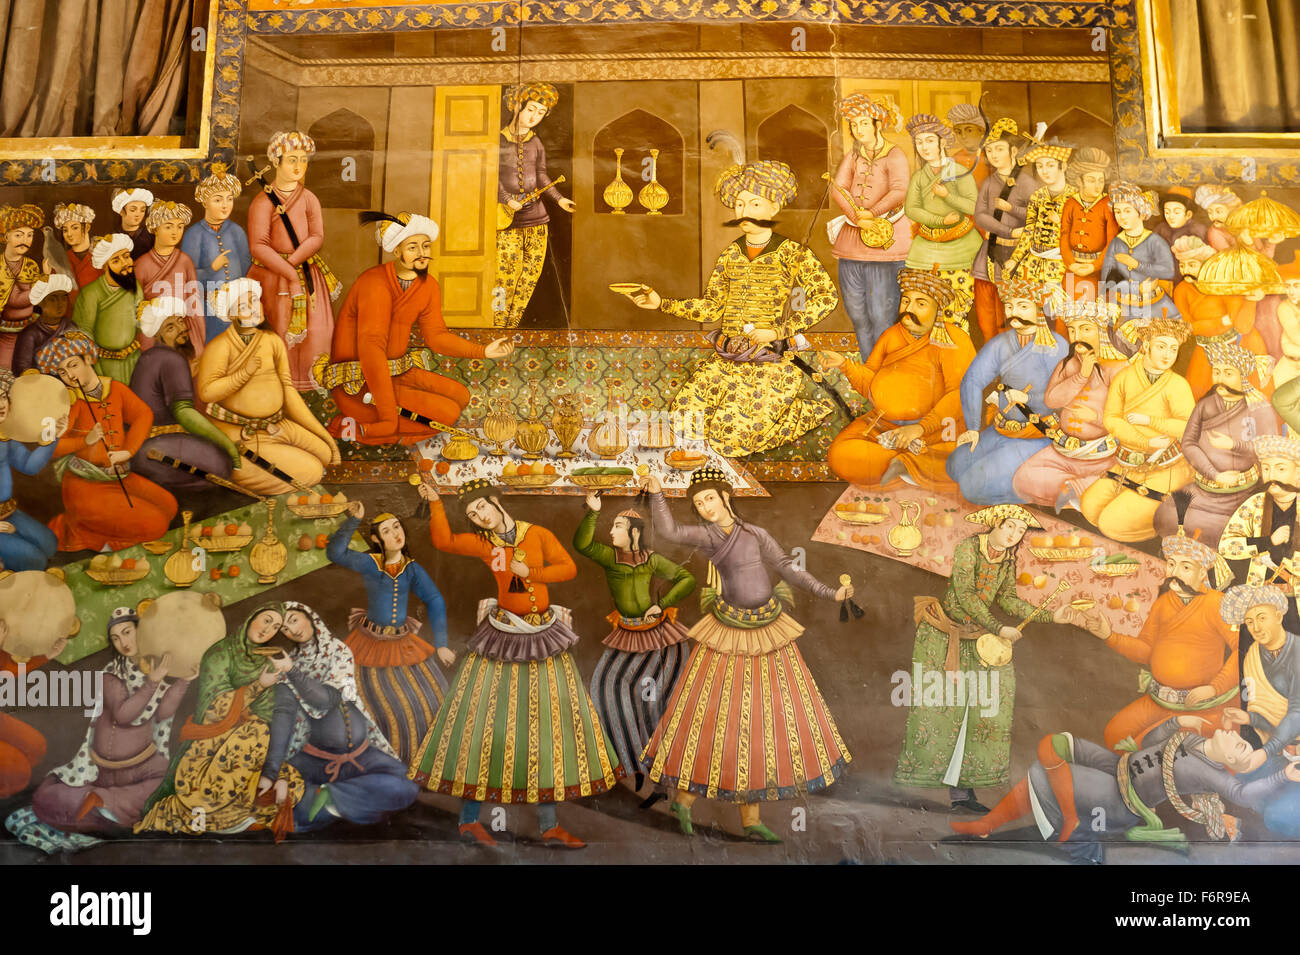 Fresco, banquet avec danseuses, Shah Abbas I Vali Nadr Muhammad Khan reçoit, émir de Boukhara au Turkestan oriental, 1611 Banque D'Images